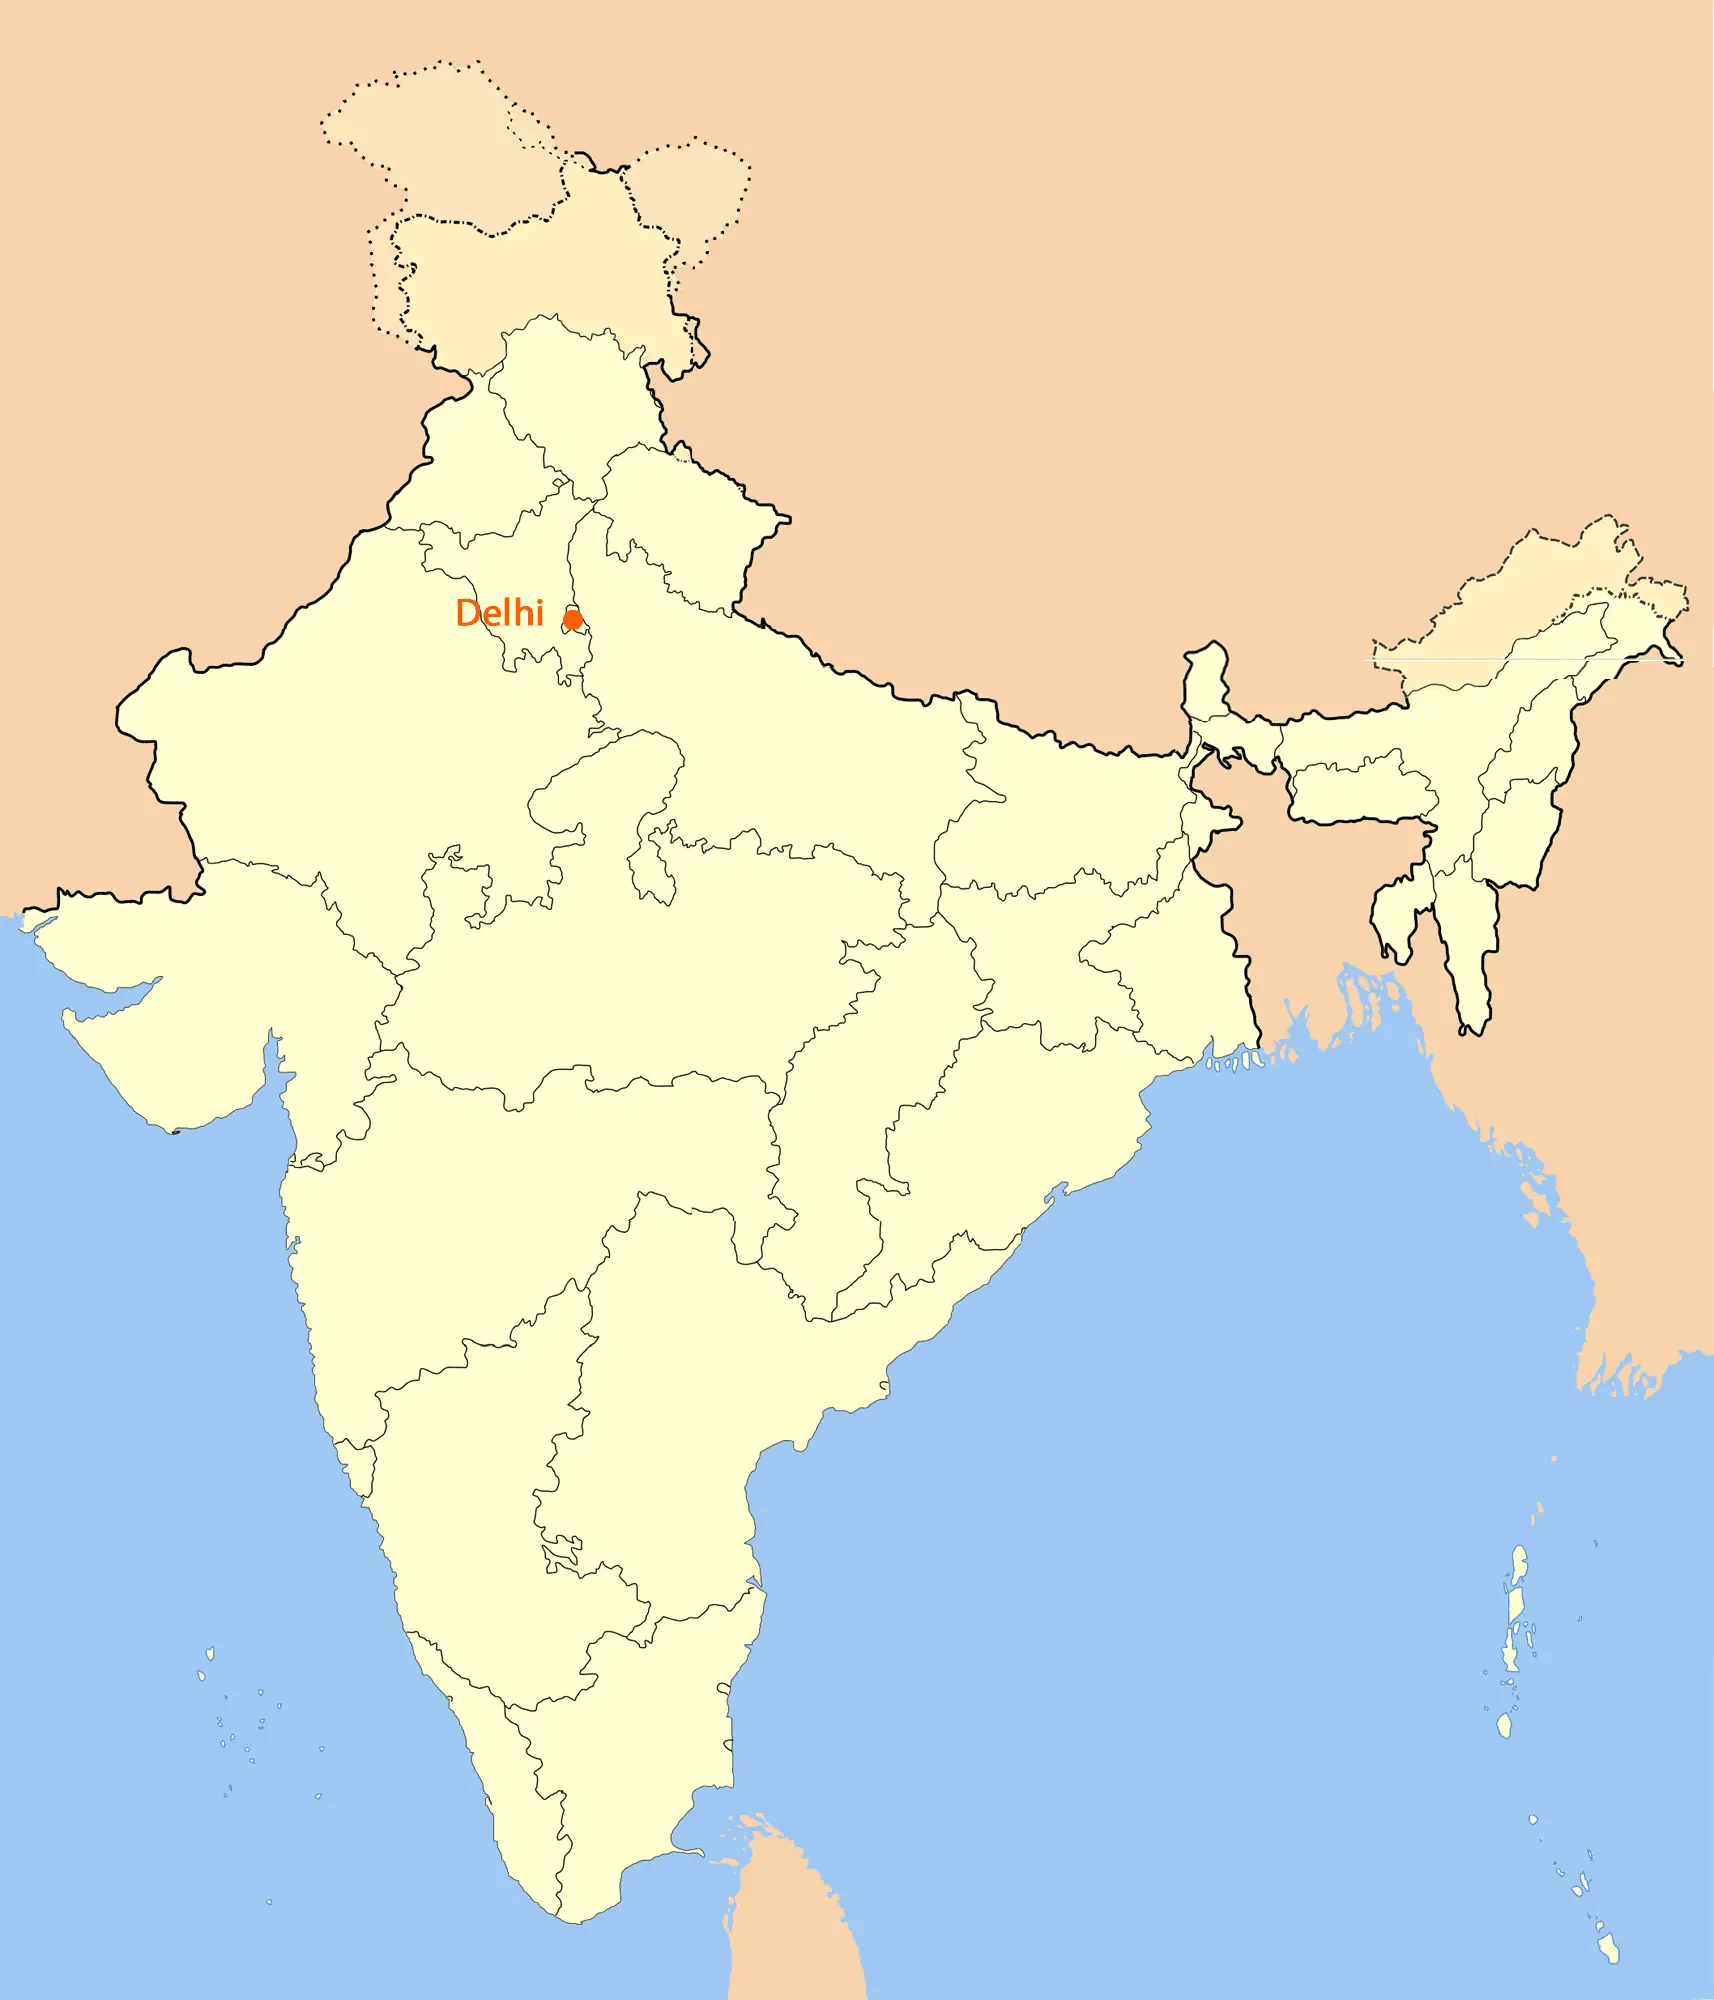 Location Map of Delhi